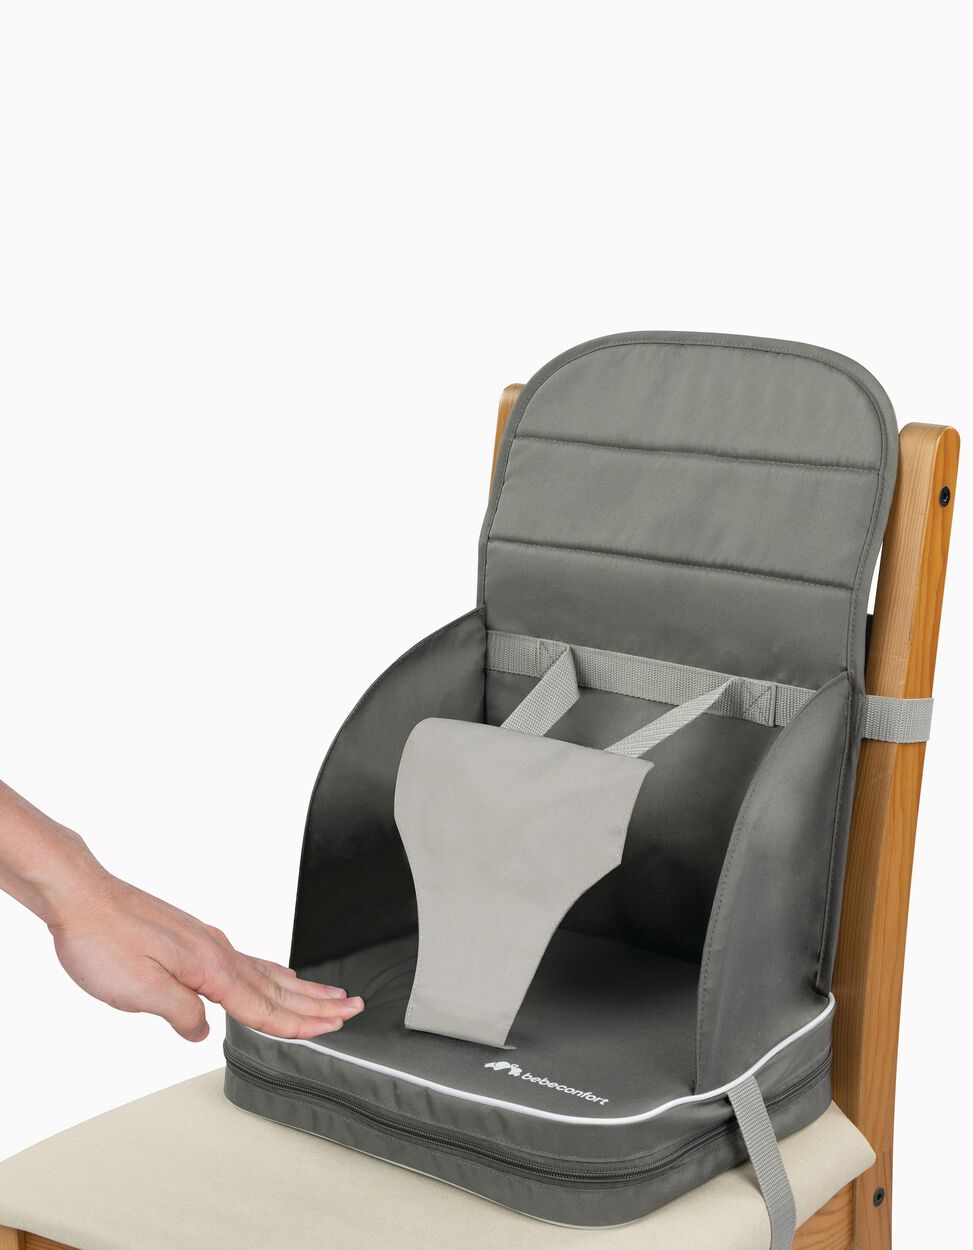 Cadeira Refeição Bebê 3em1 De 6 Meses Até 25kg - Safety Cor Cinza